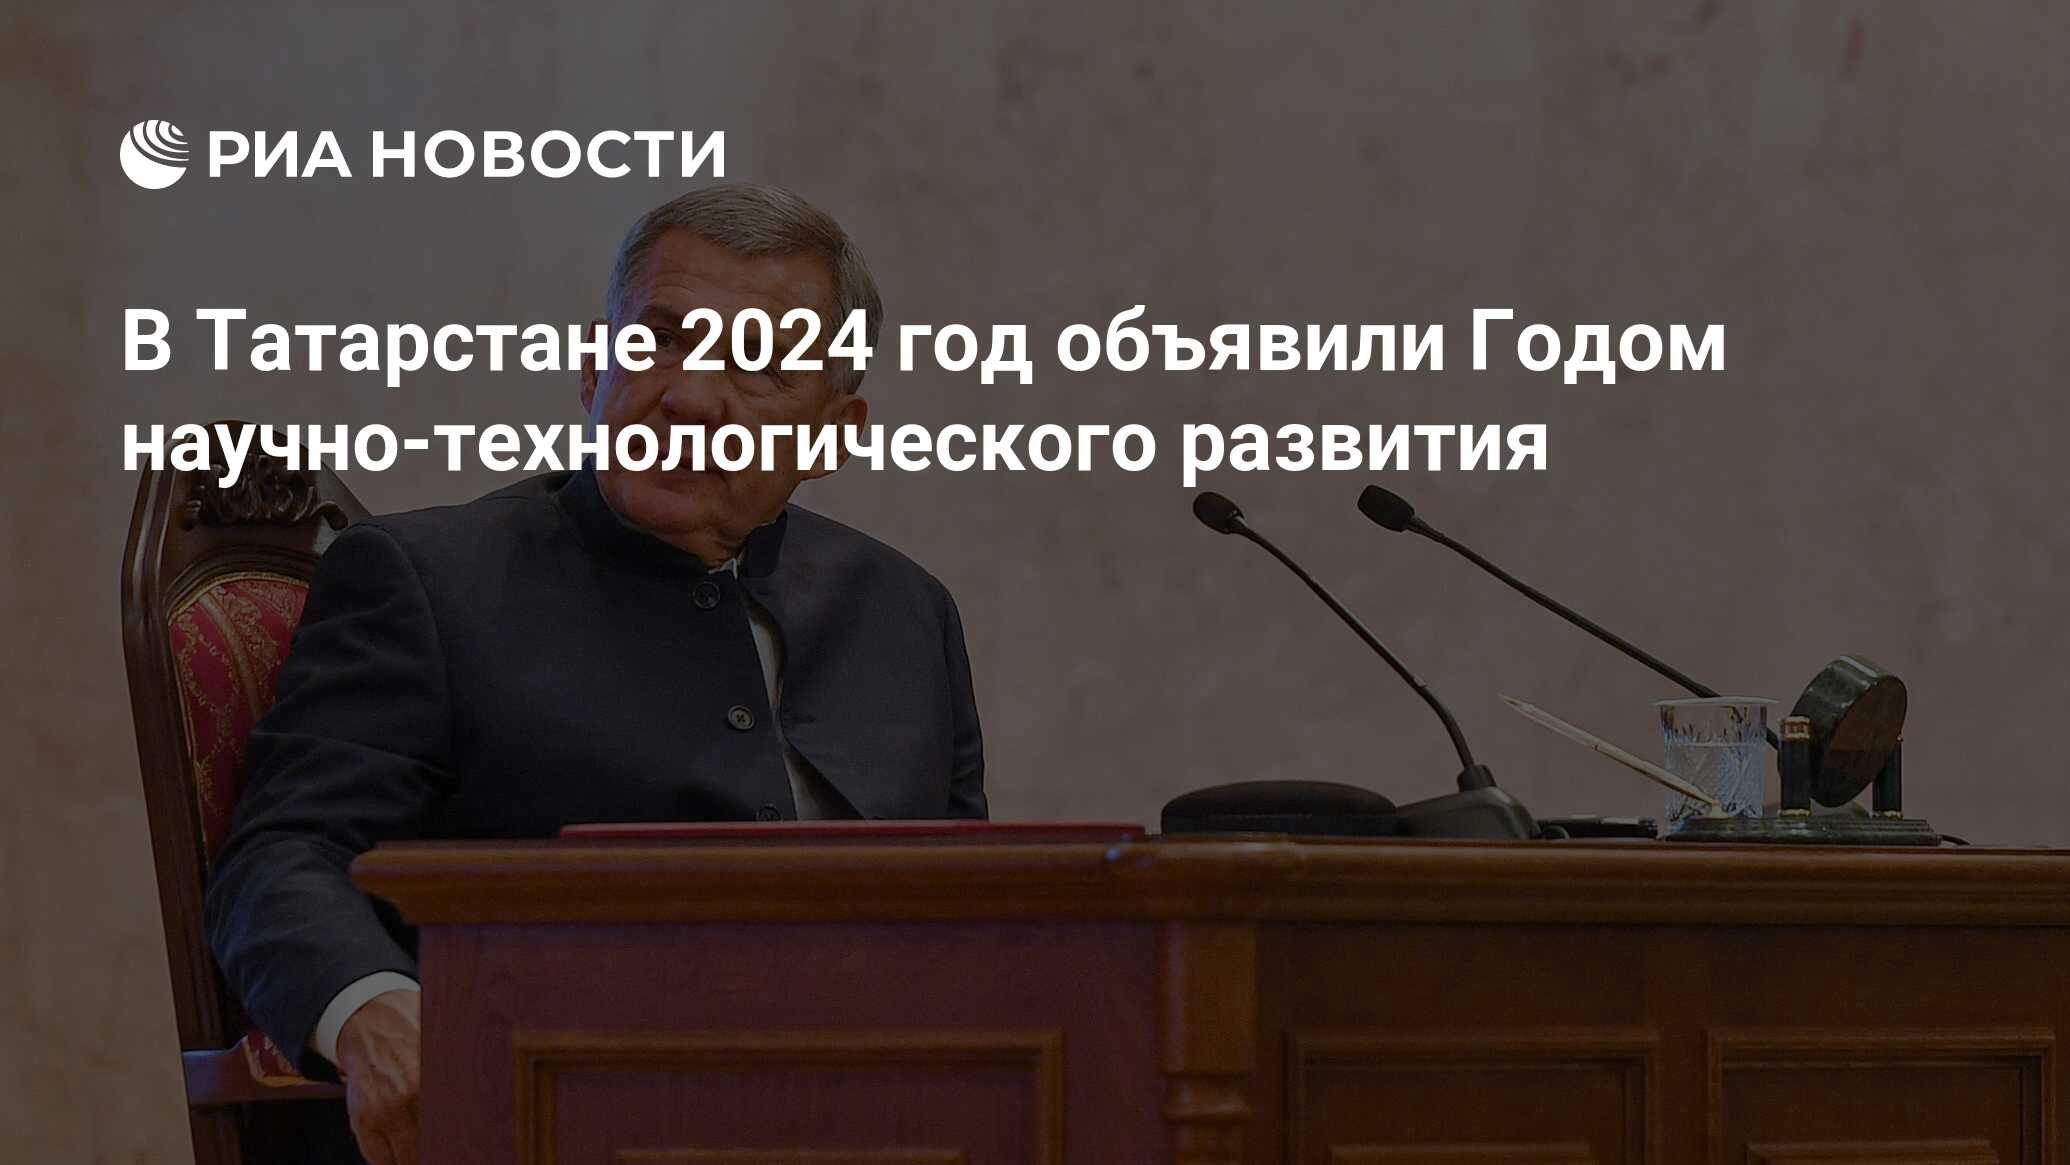 Сколько лет татарстану в 2024